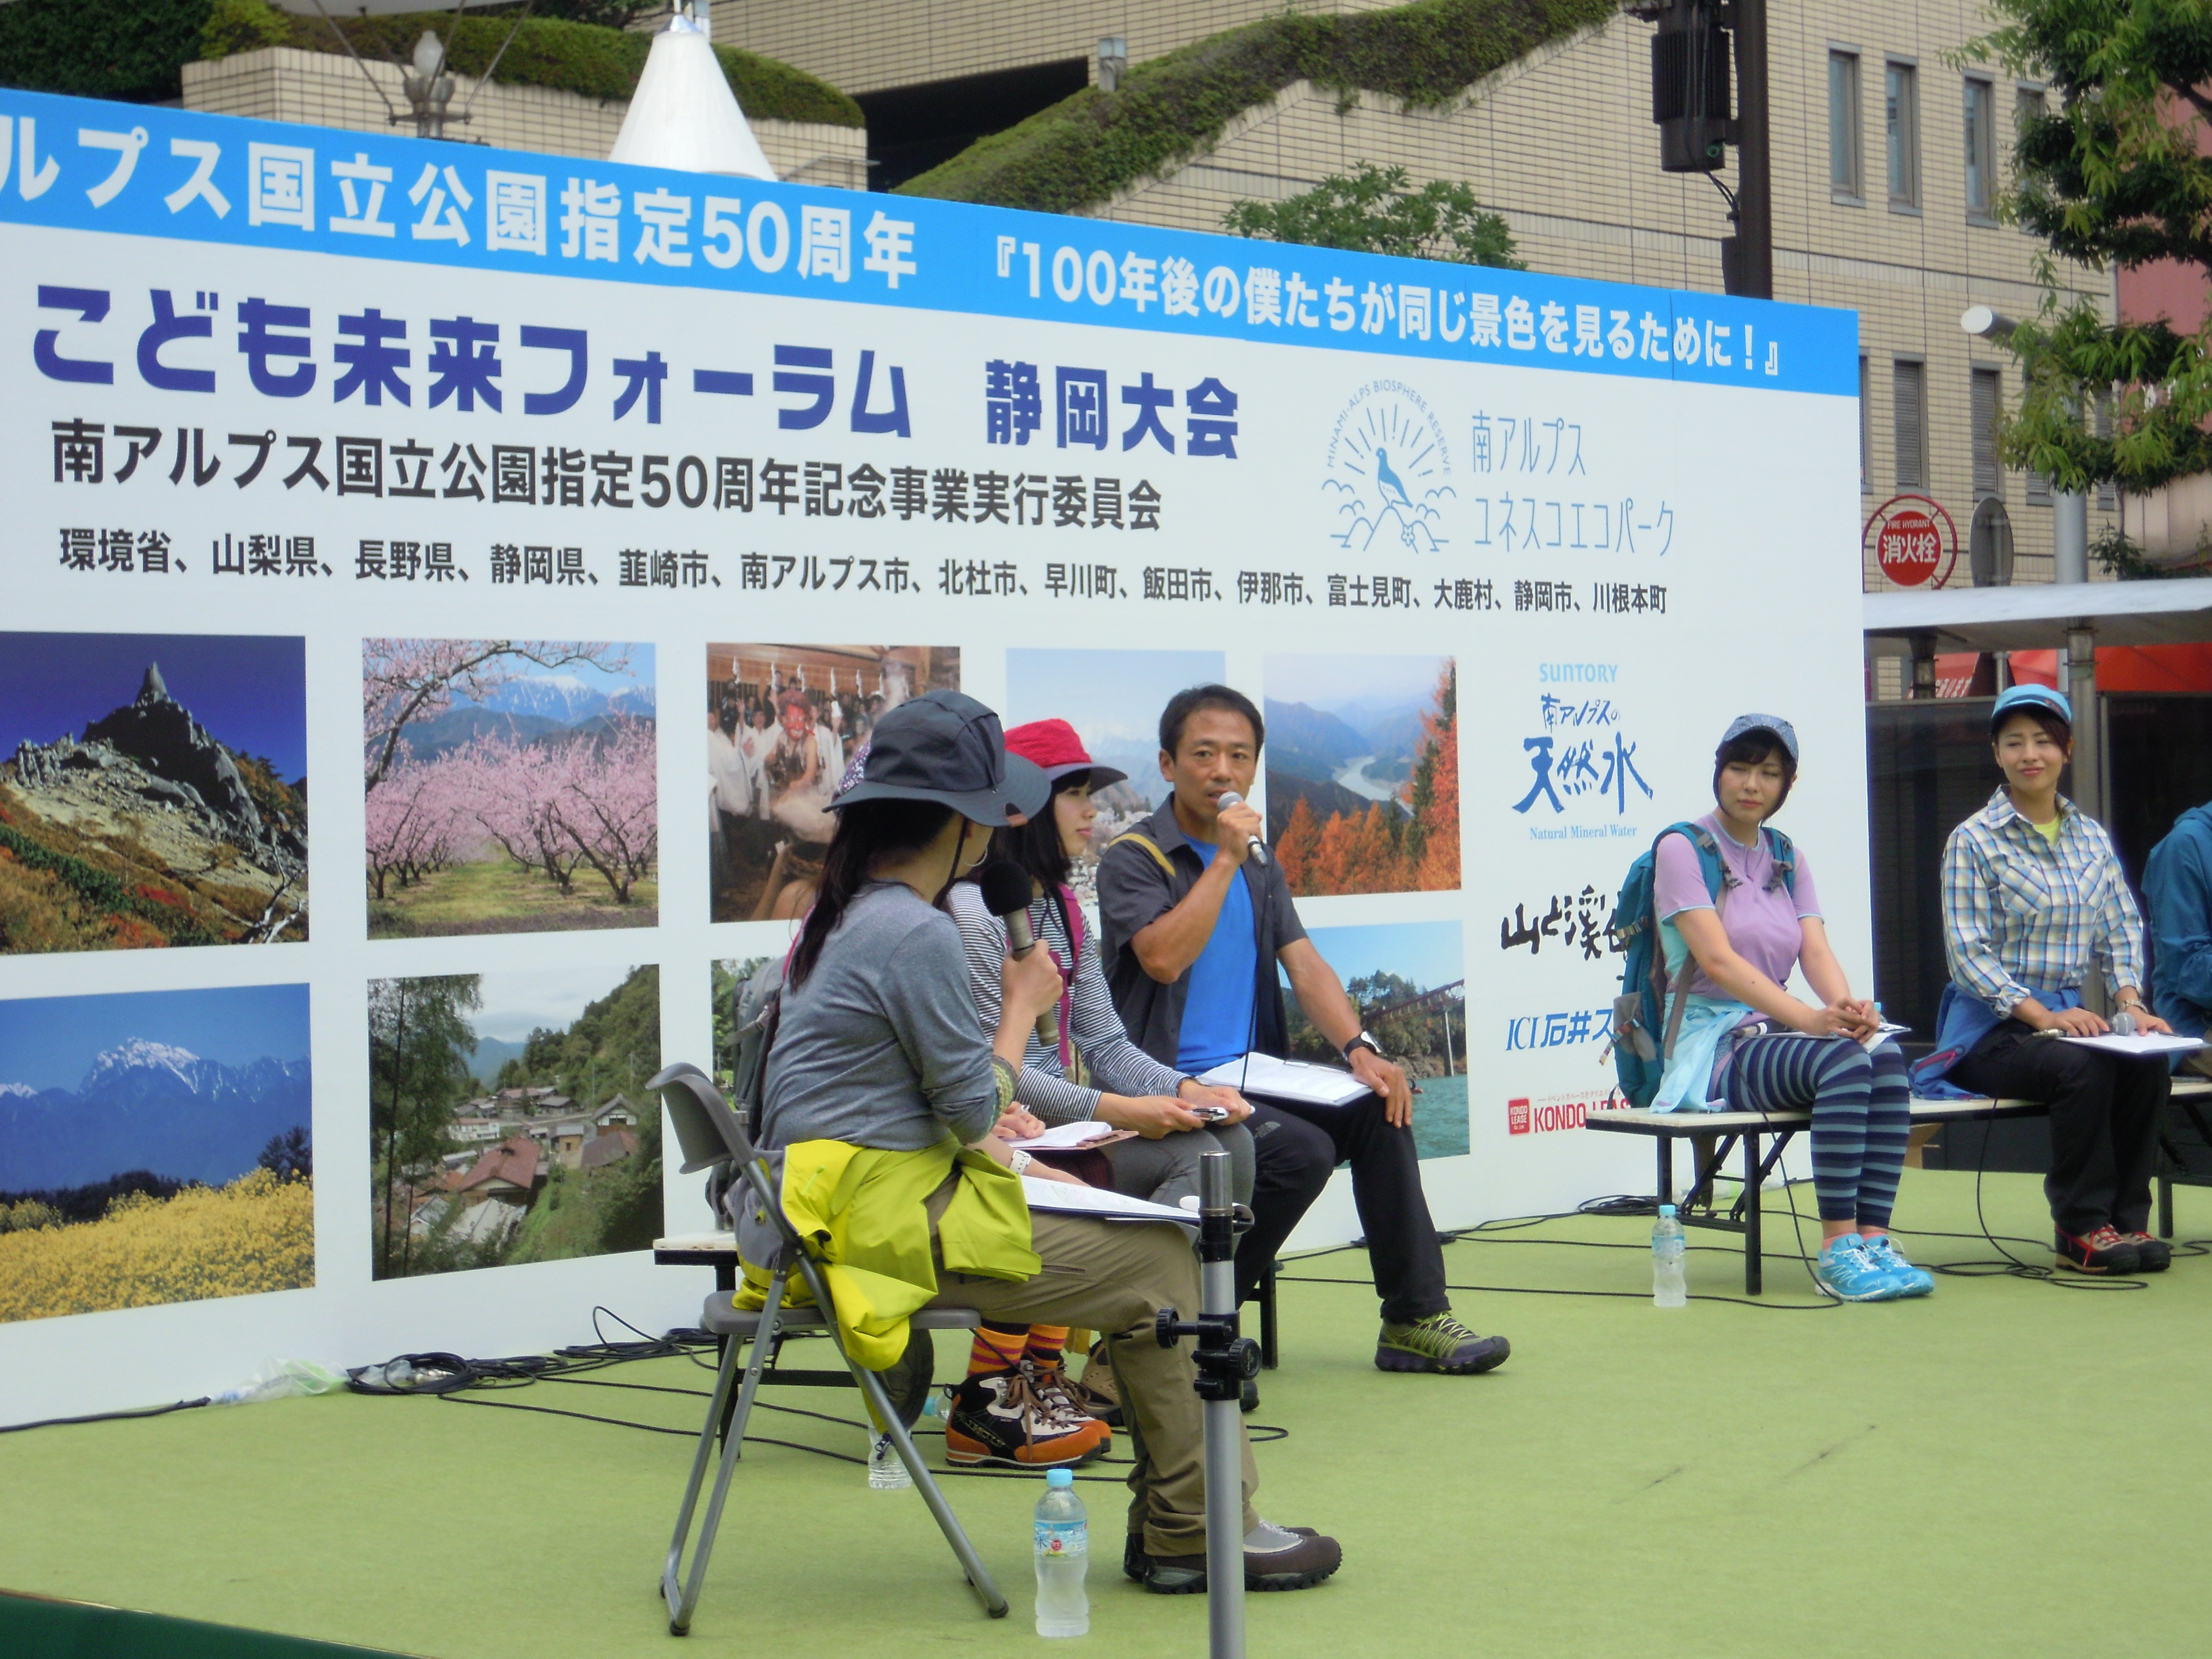 http://www.shizutan.jp/news/2014/07/29/images/DSCN0822.JPG